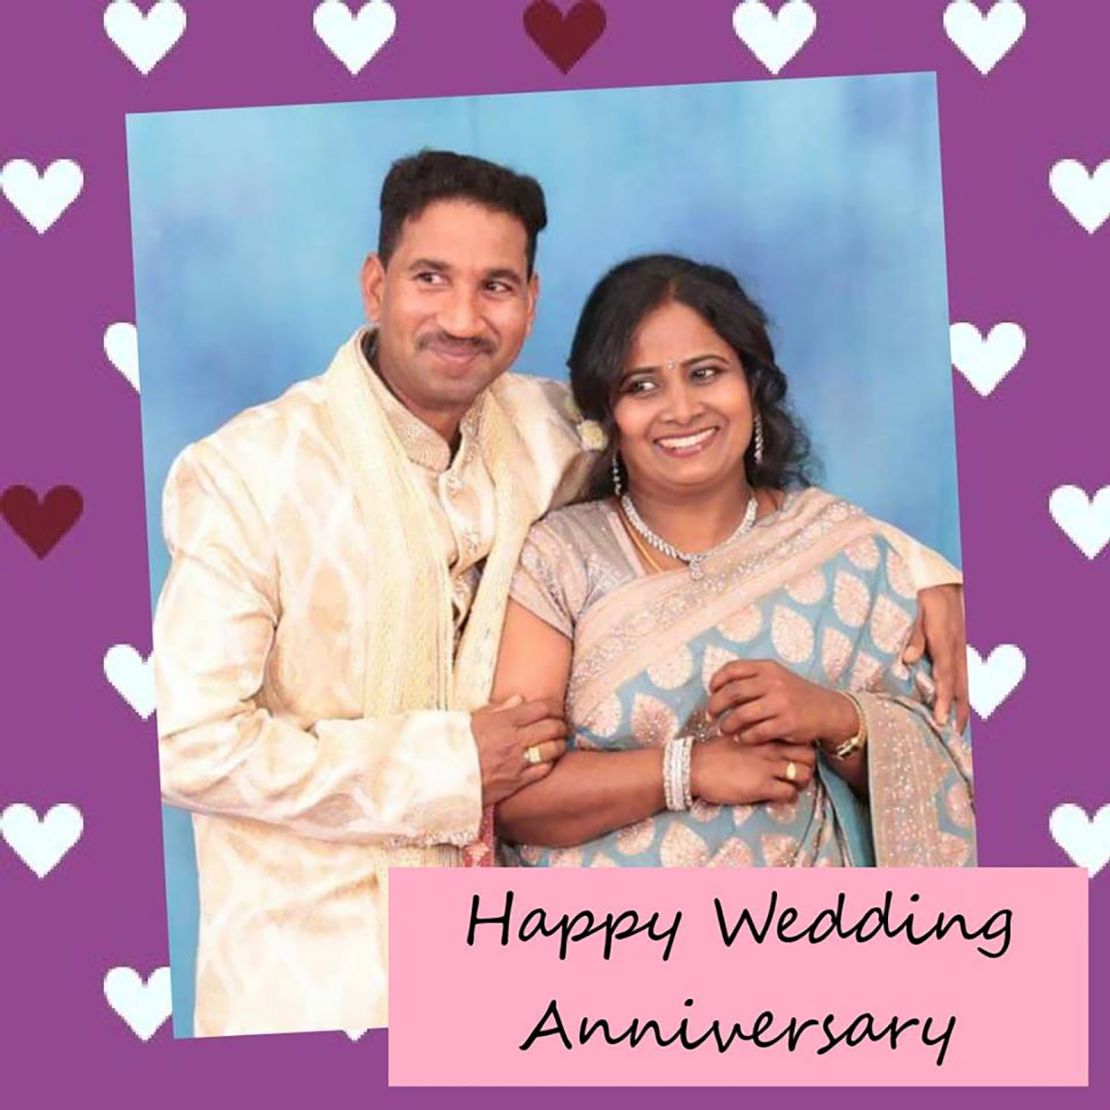 Nades and Priya met in Australia and married in September 2014.